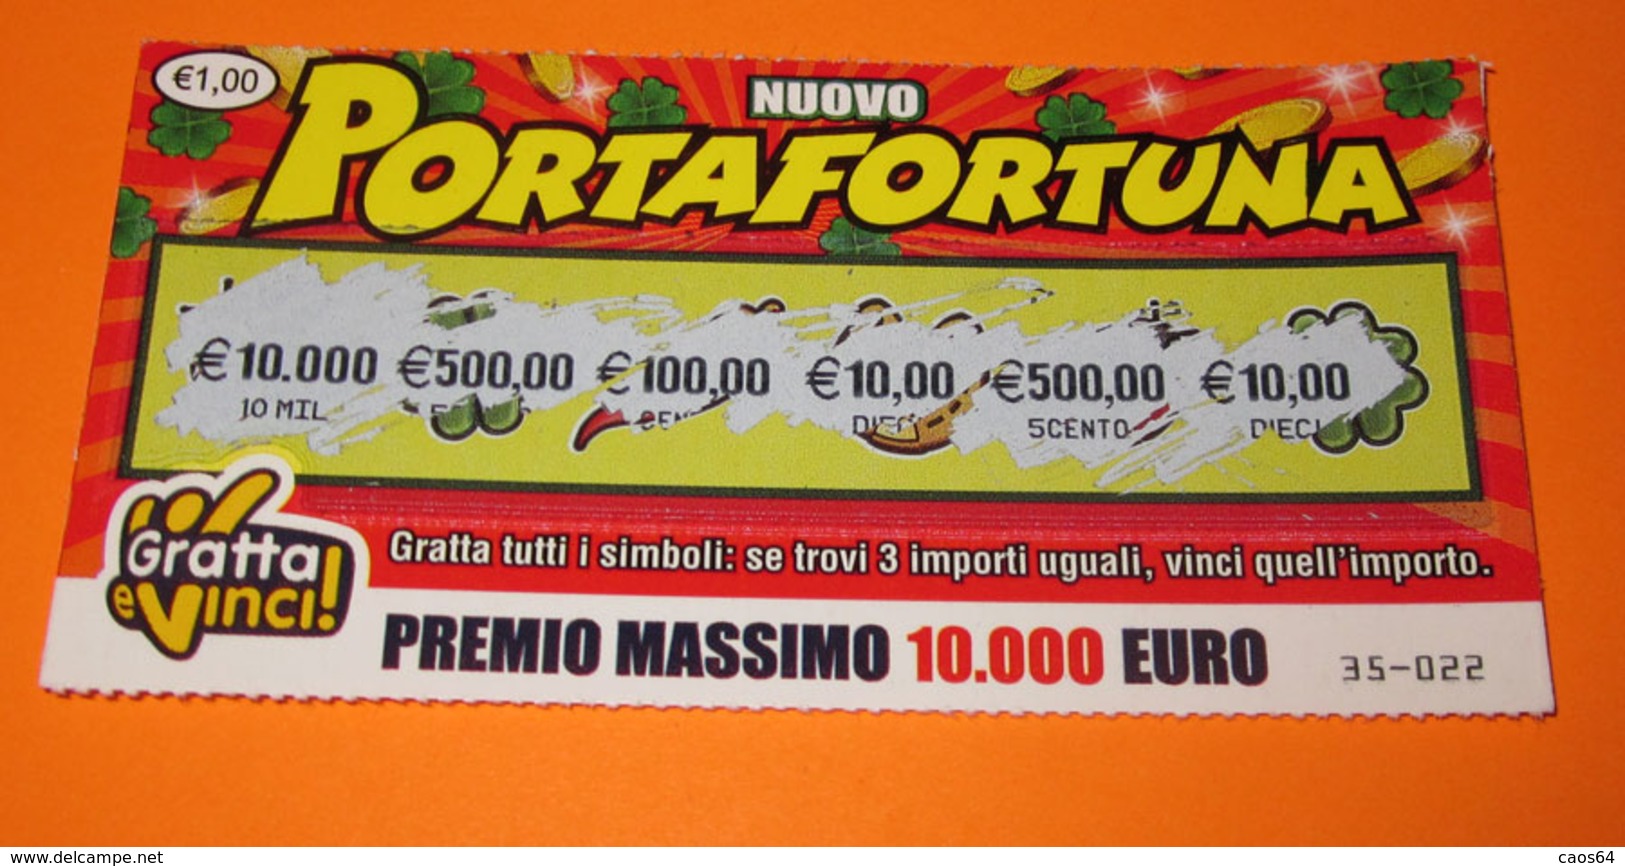 GRATTA E VINCI PORTAFORTUNA - Lottery Tickets